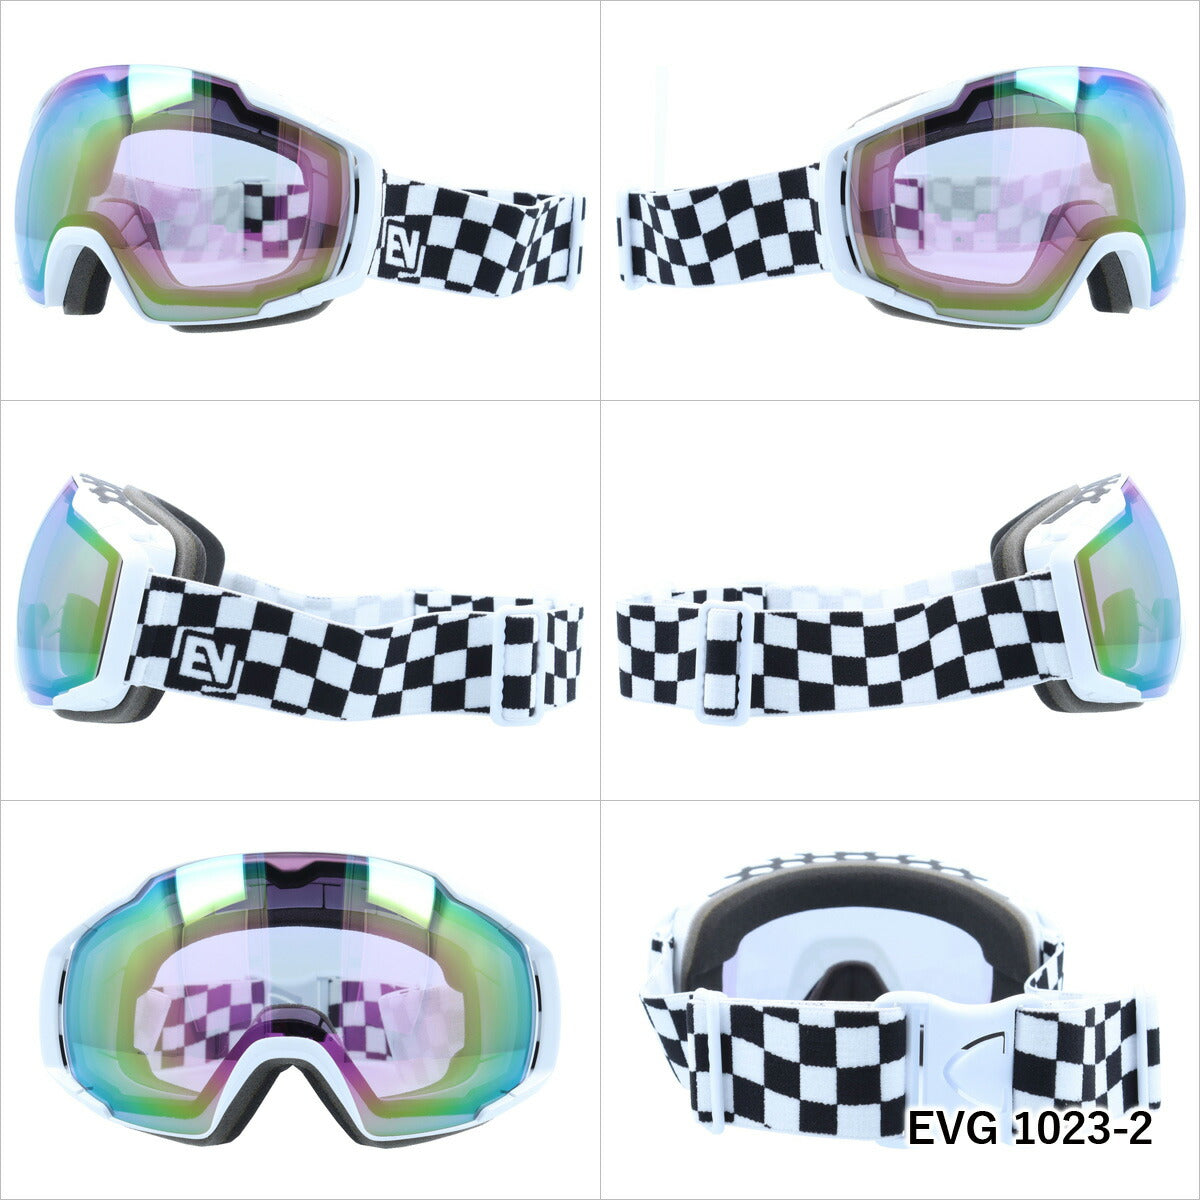 眼鏡対応 ヘルメット対応 ミラーレンズ スノーゴーグル スキー スノーボード スノボ 球面ダブルレンズ フレームあり メンズ レディース ウィンタースポーツ 曇り防止 曇り止め 誕生日 プレゼント EVOLVE イヴァルブ EVG 1023 男性 女性